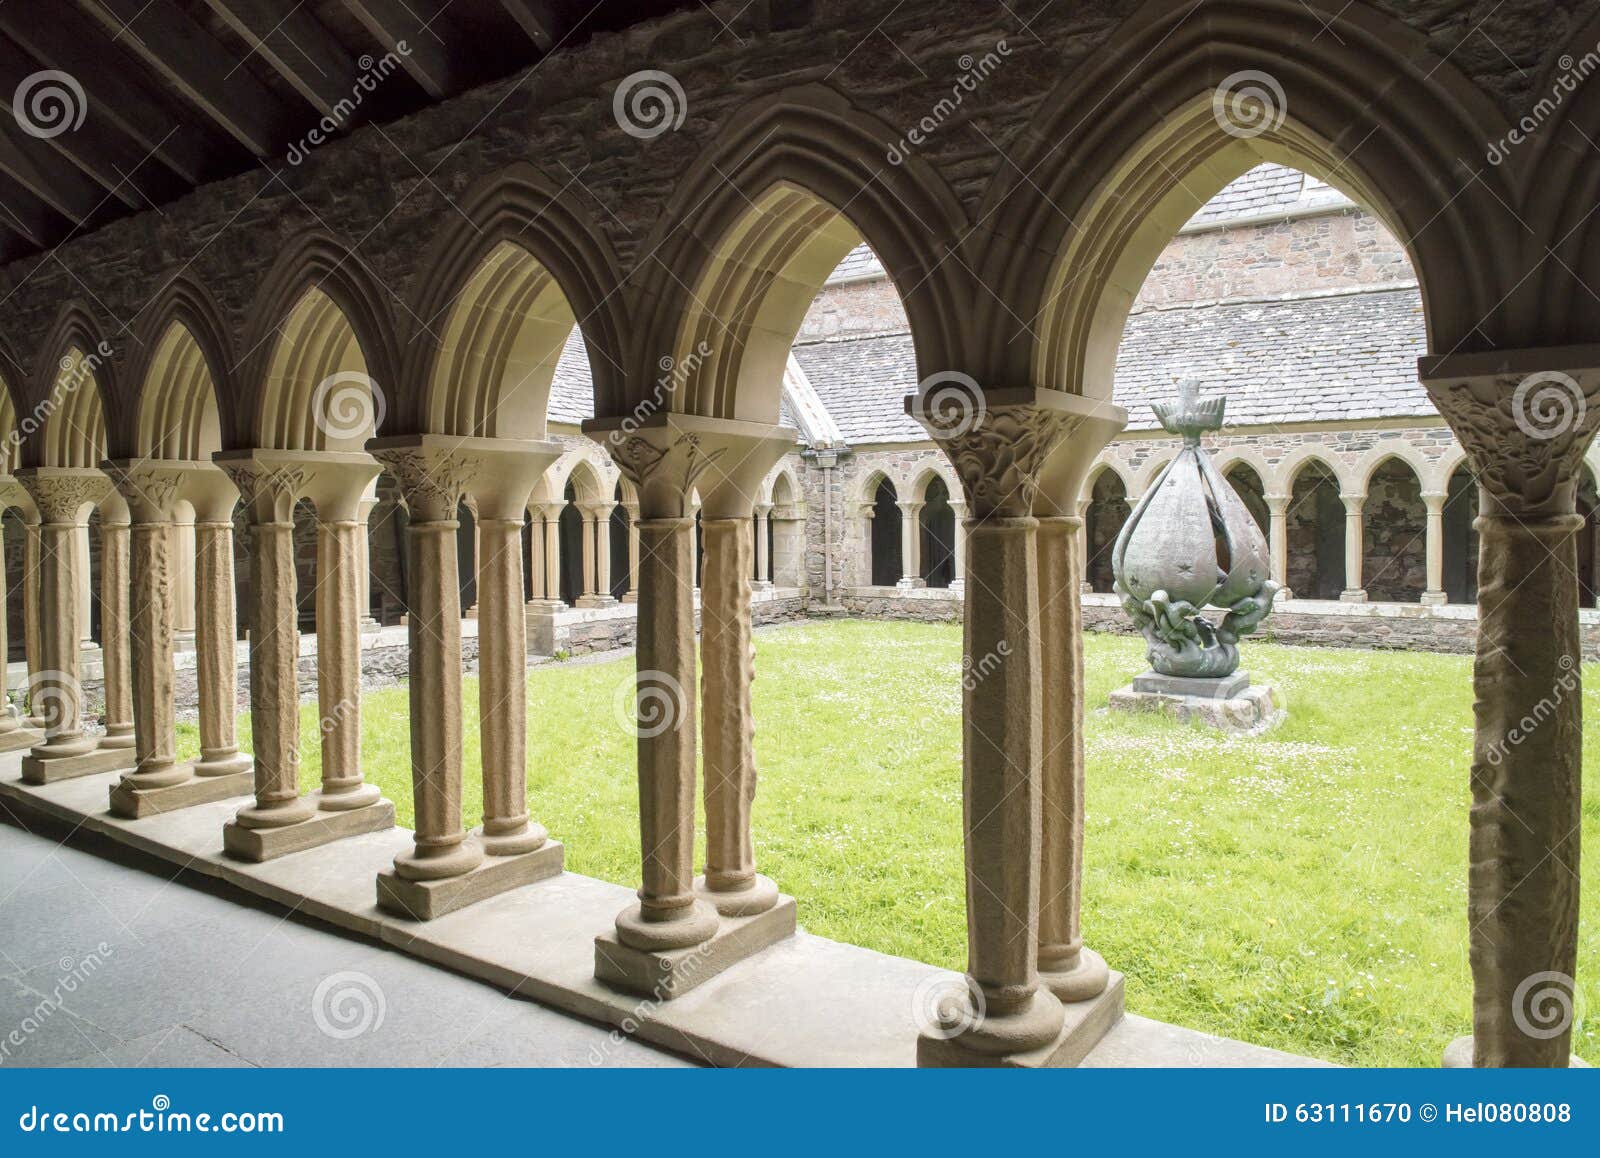 cloister iona abbey